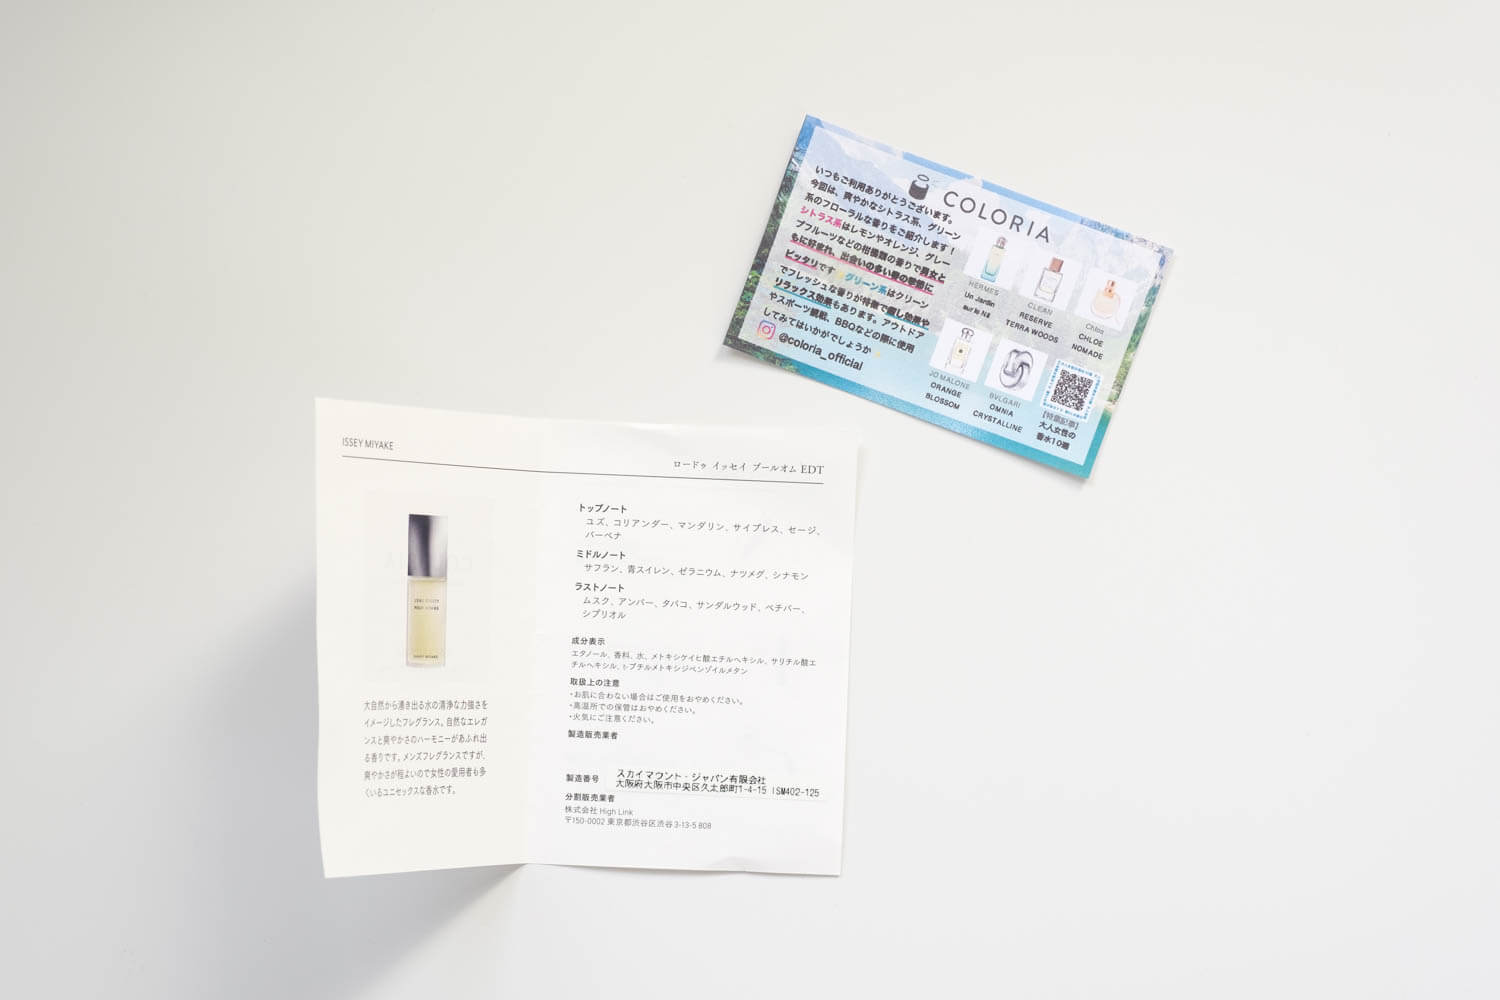 香水の定期便 COLORIA（カラリア）から届いた香水の詳細やおすすめ香水の紙